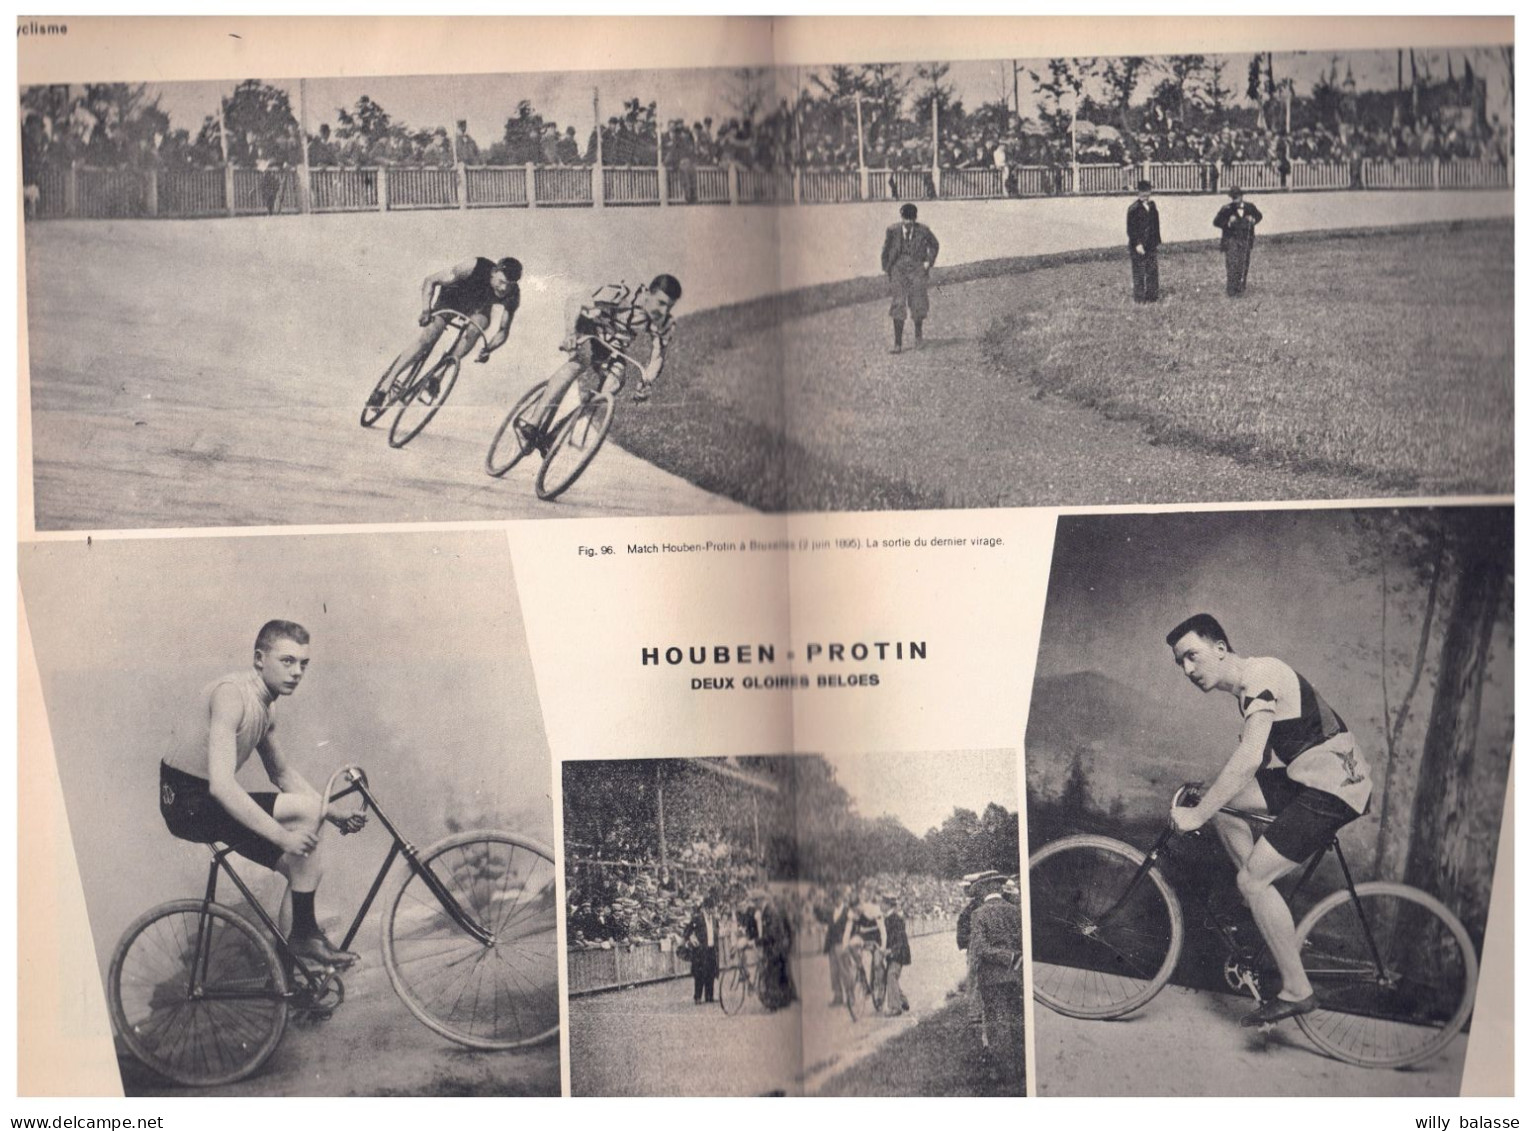 +++ LIVRE Ancien 1936 - Les Débuts du Cyclisme en Belgique - 1819  - XXe siècle - Sport  //